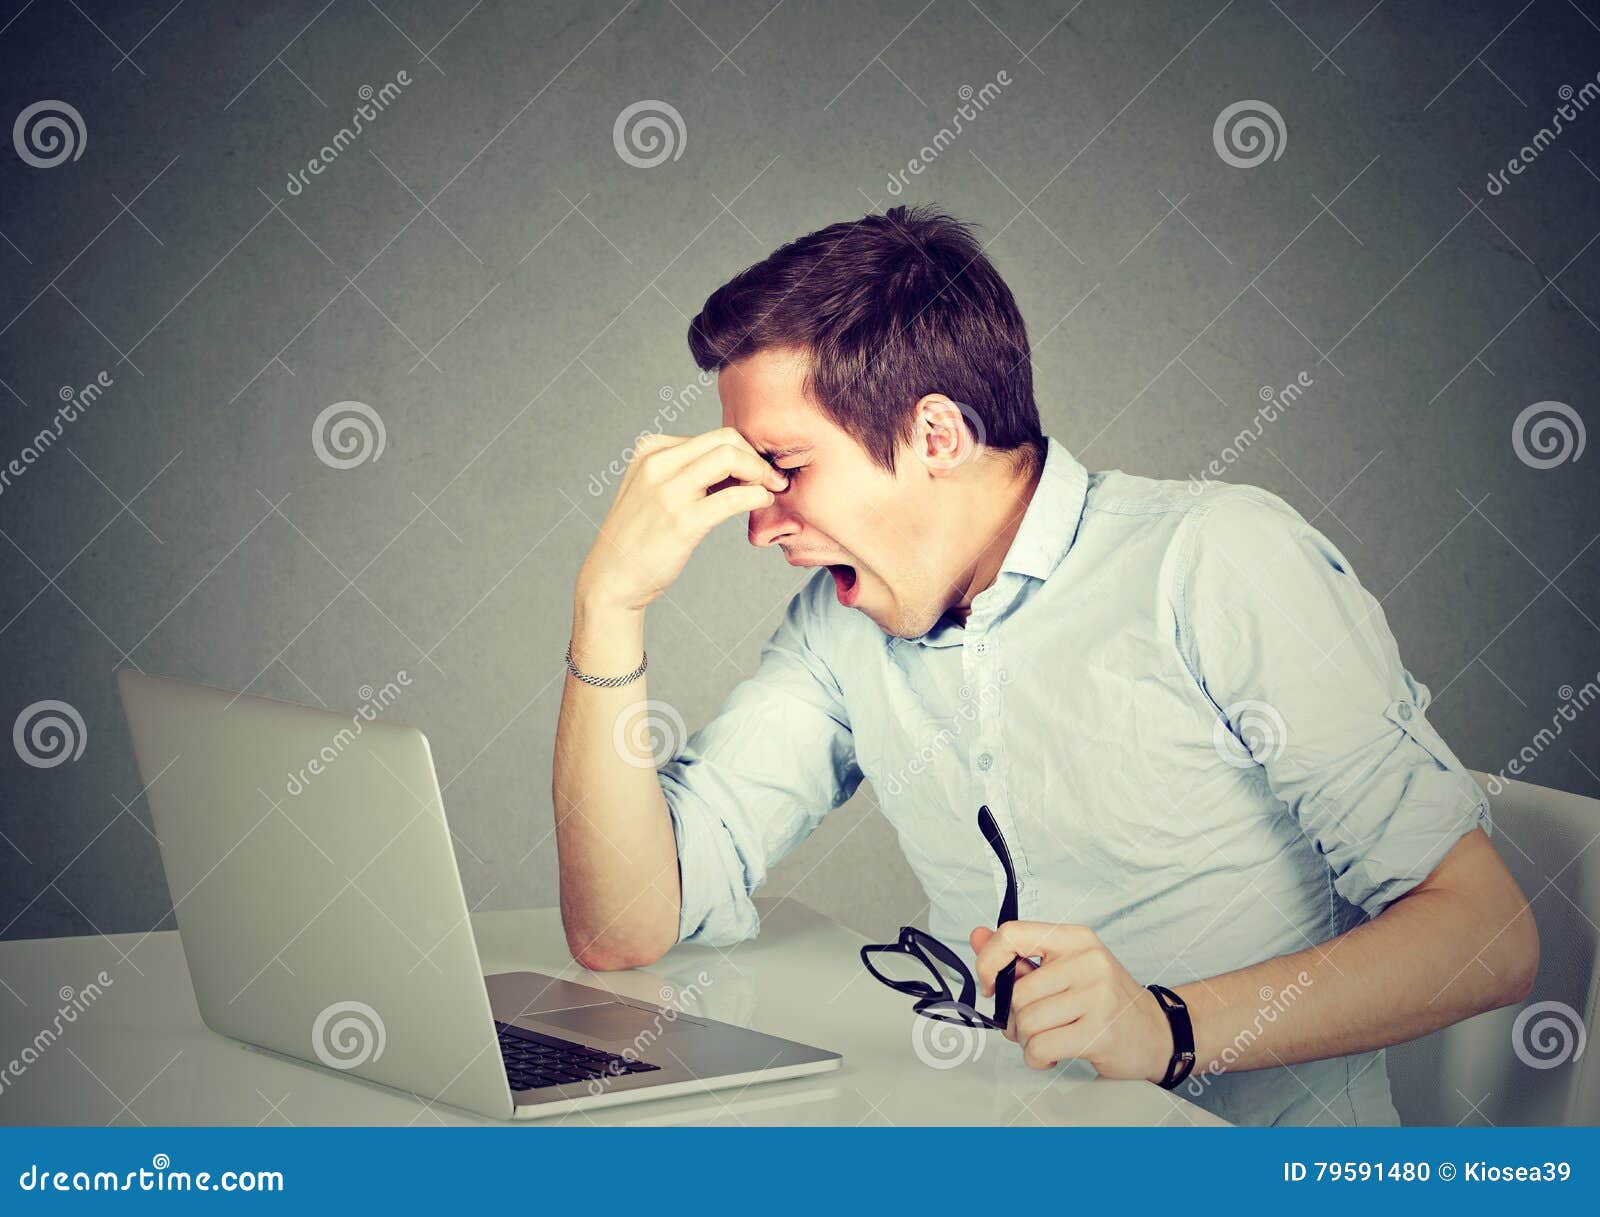 Feeling exhausted. Утомленный человек перед компьютером. Уставший парень в классике за ноутбуком. Парень перед ноутбуком снизу. Фото молодого человека сидящего перед компом уставшим взглядом.